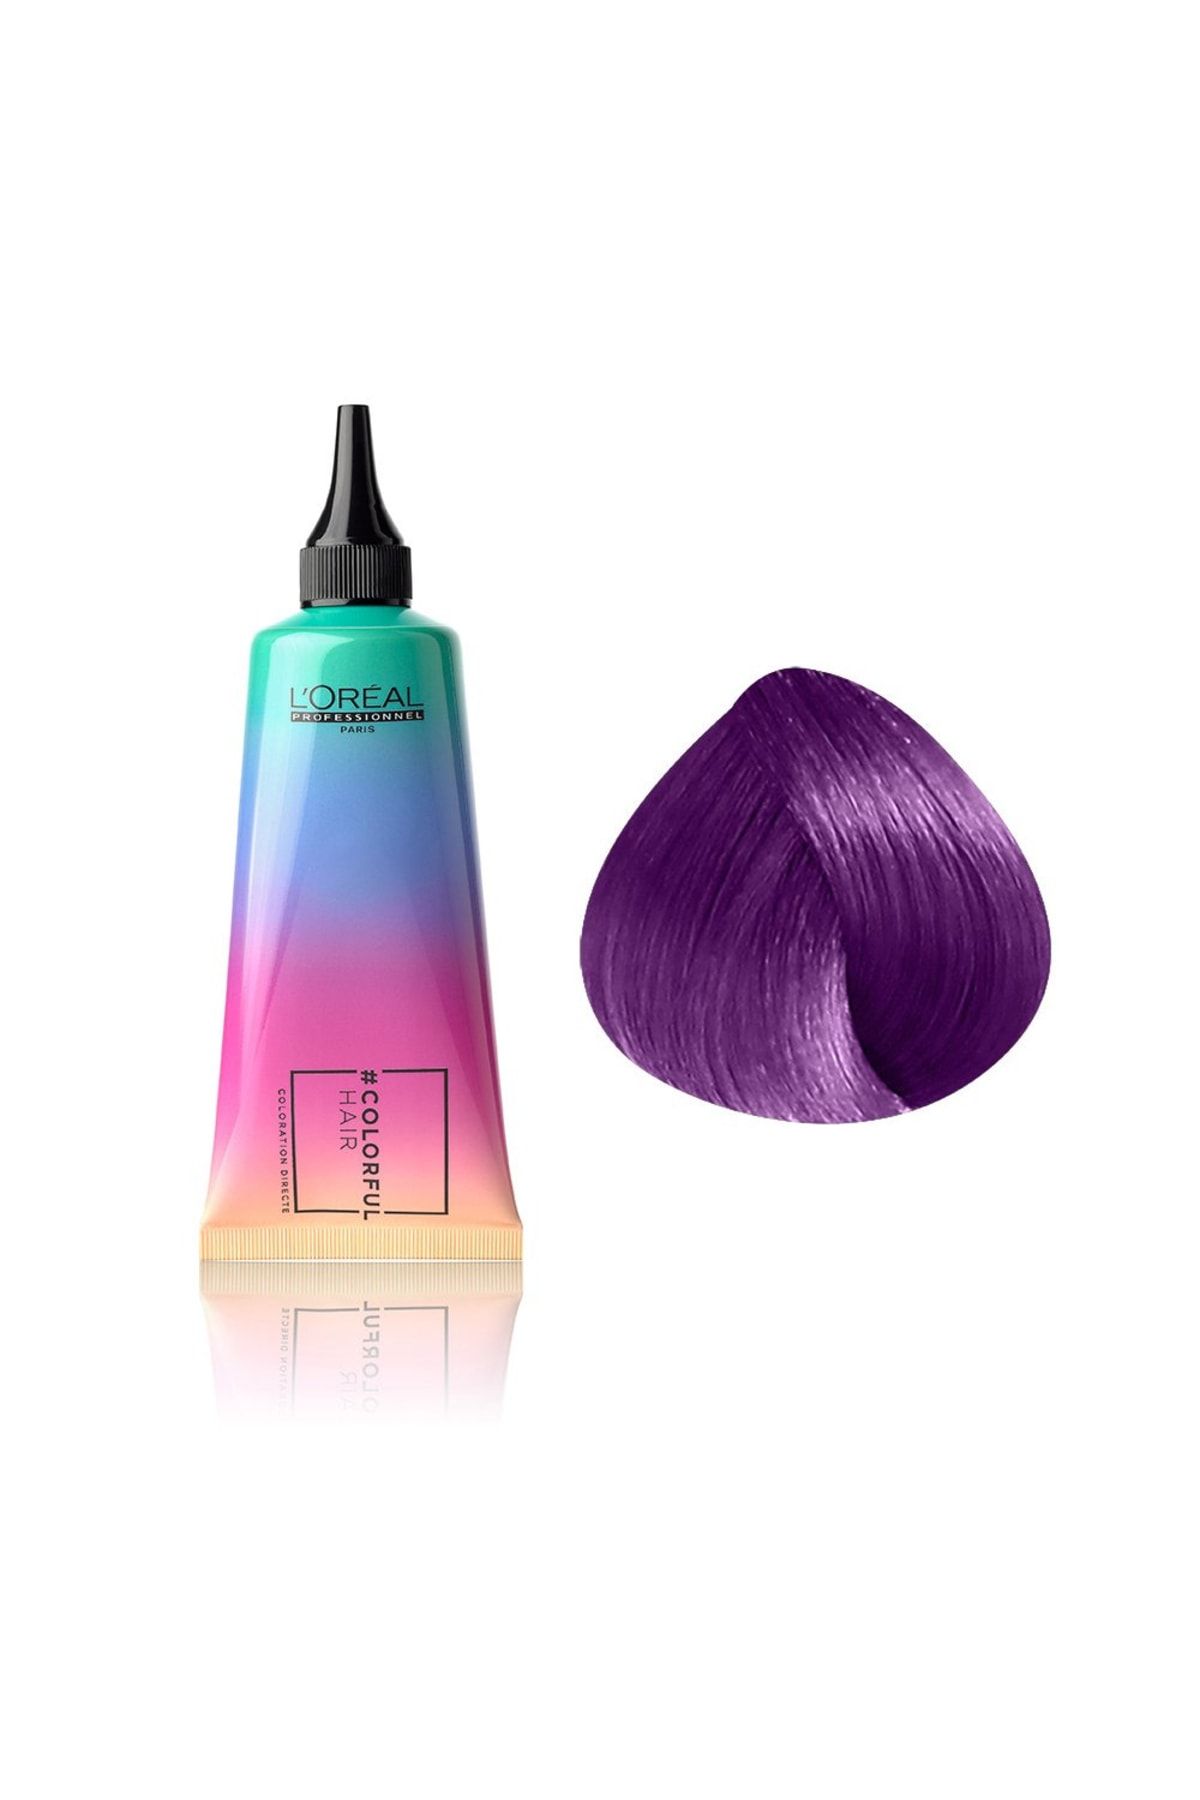 L'oreal Professionnel Colorful Hair Electric Purple Purple Bright Perfect Semi Permament Hair Color Cream 90ml